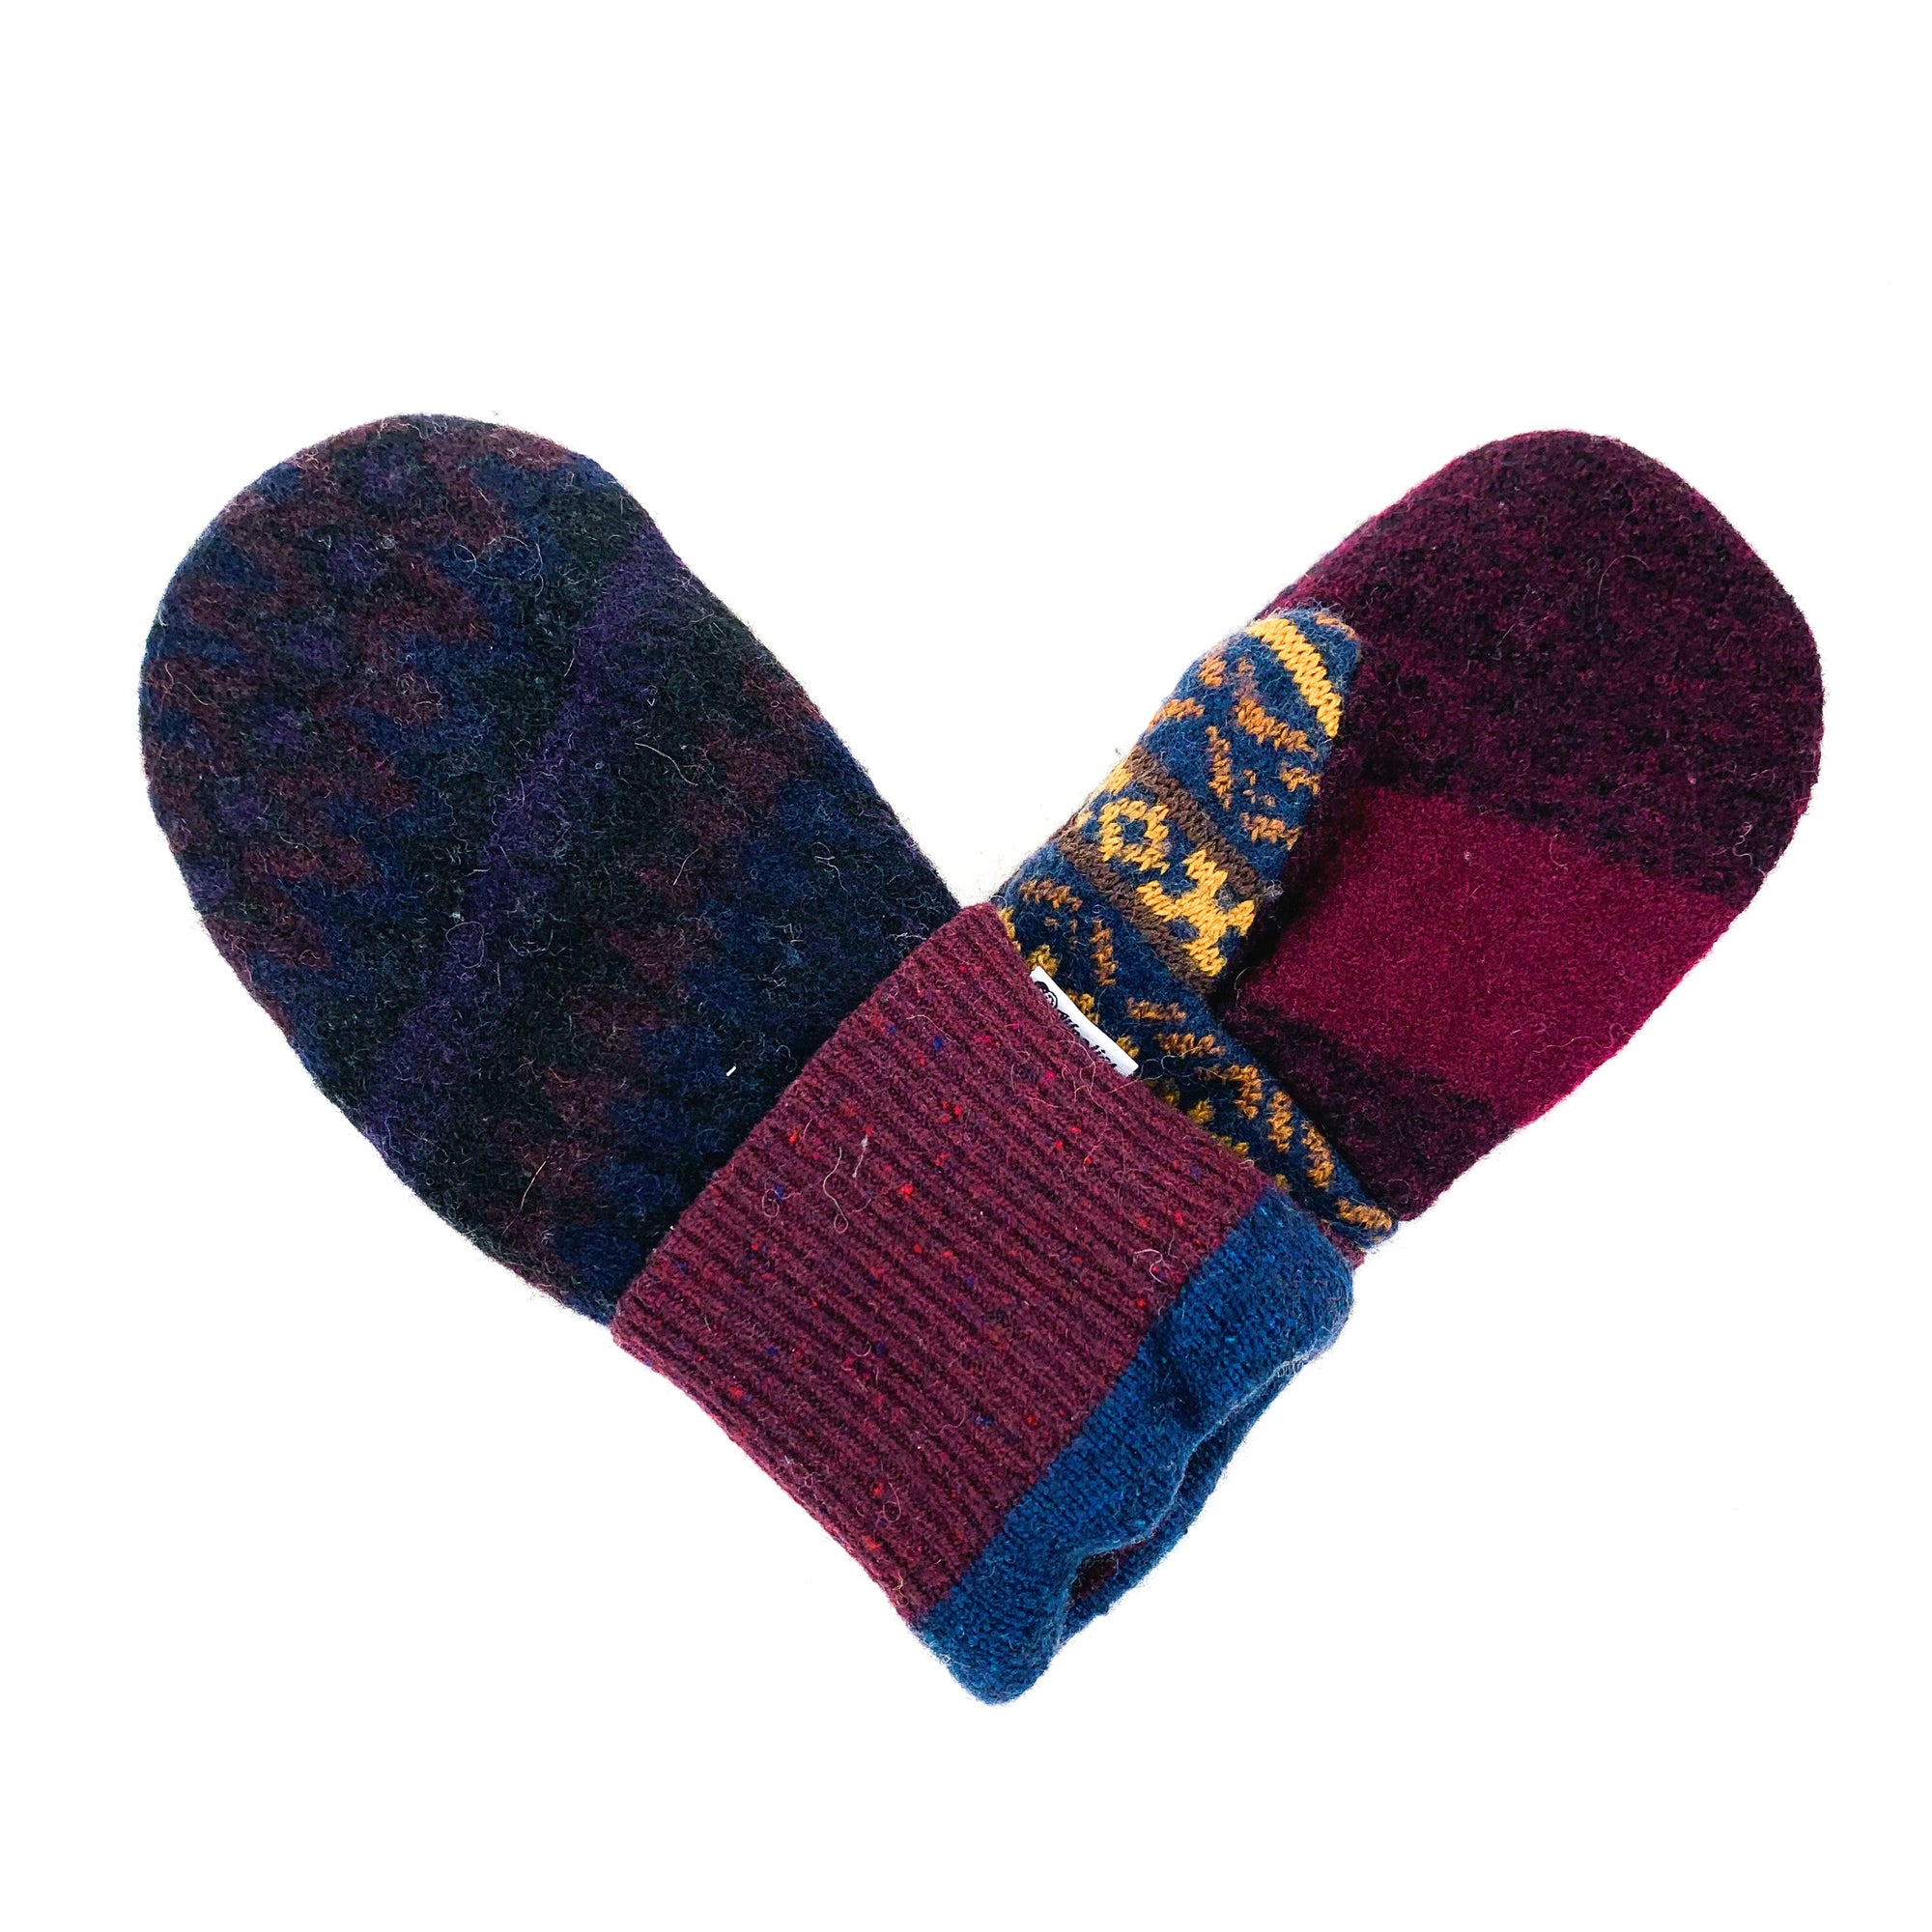 Bernie Sander's mittens, sweater mittens, warm mittens, womens mittens